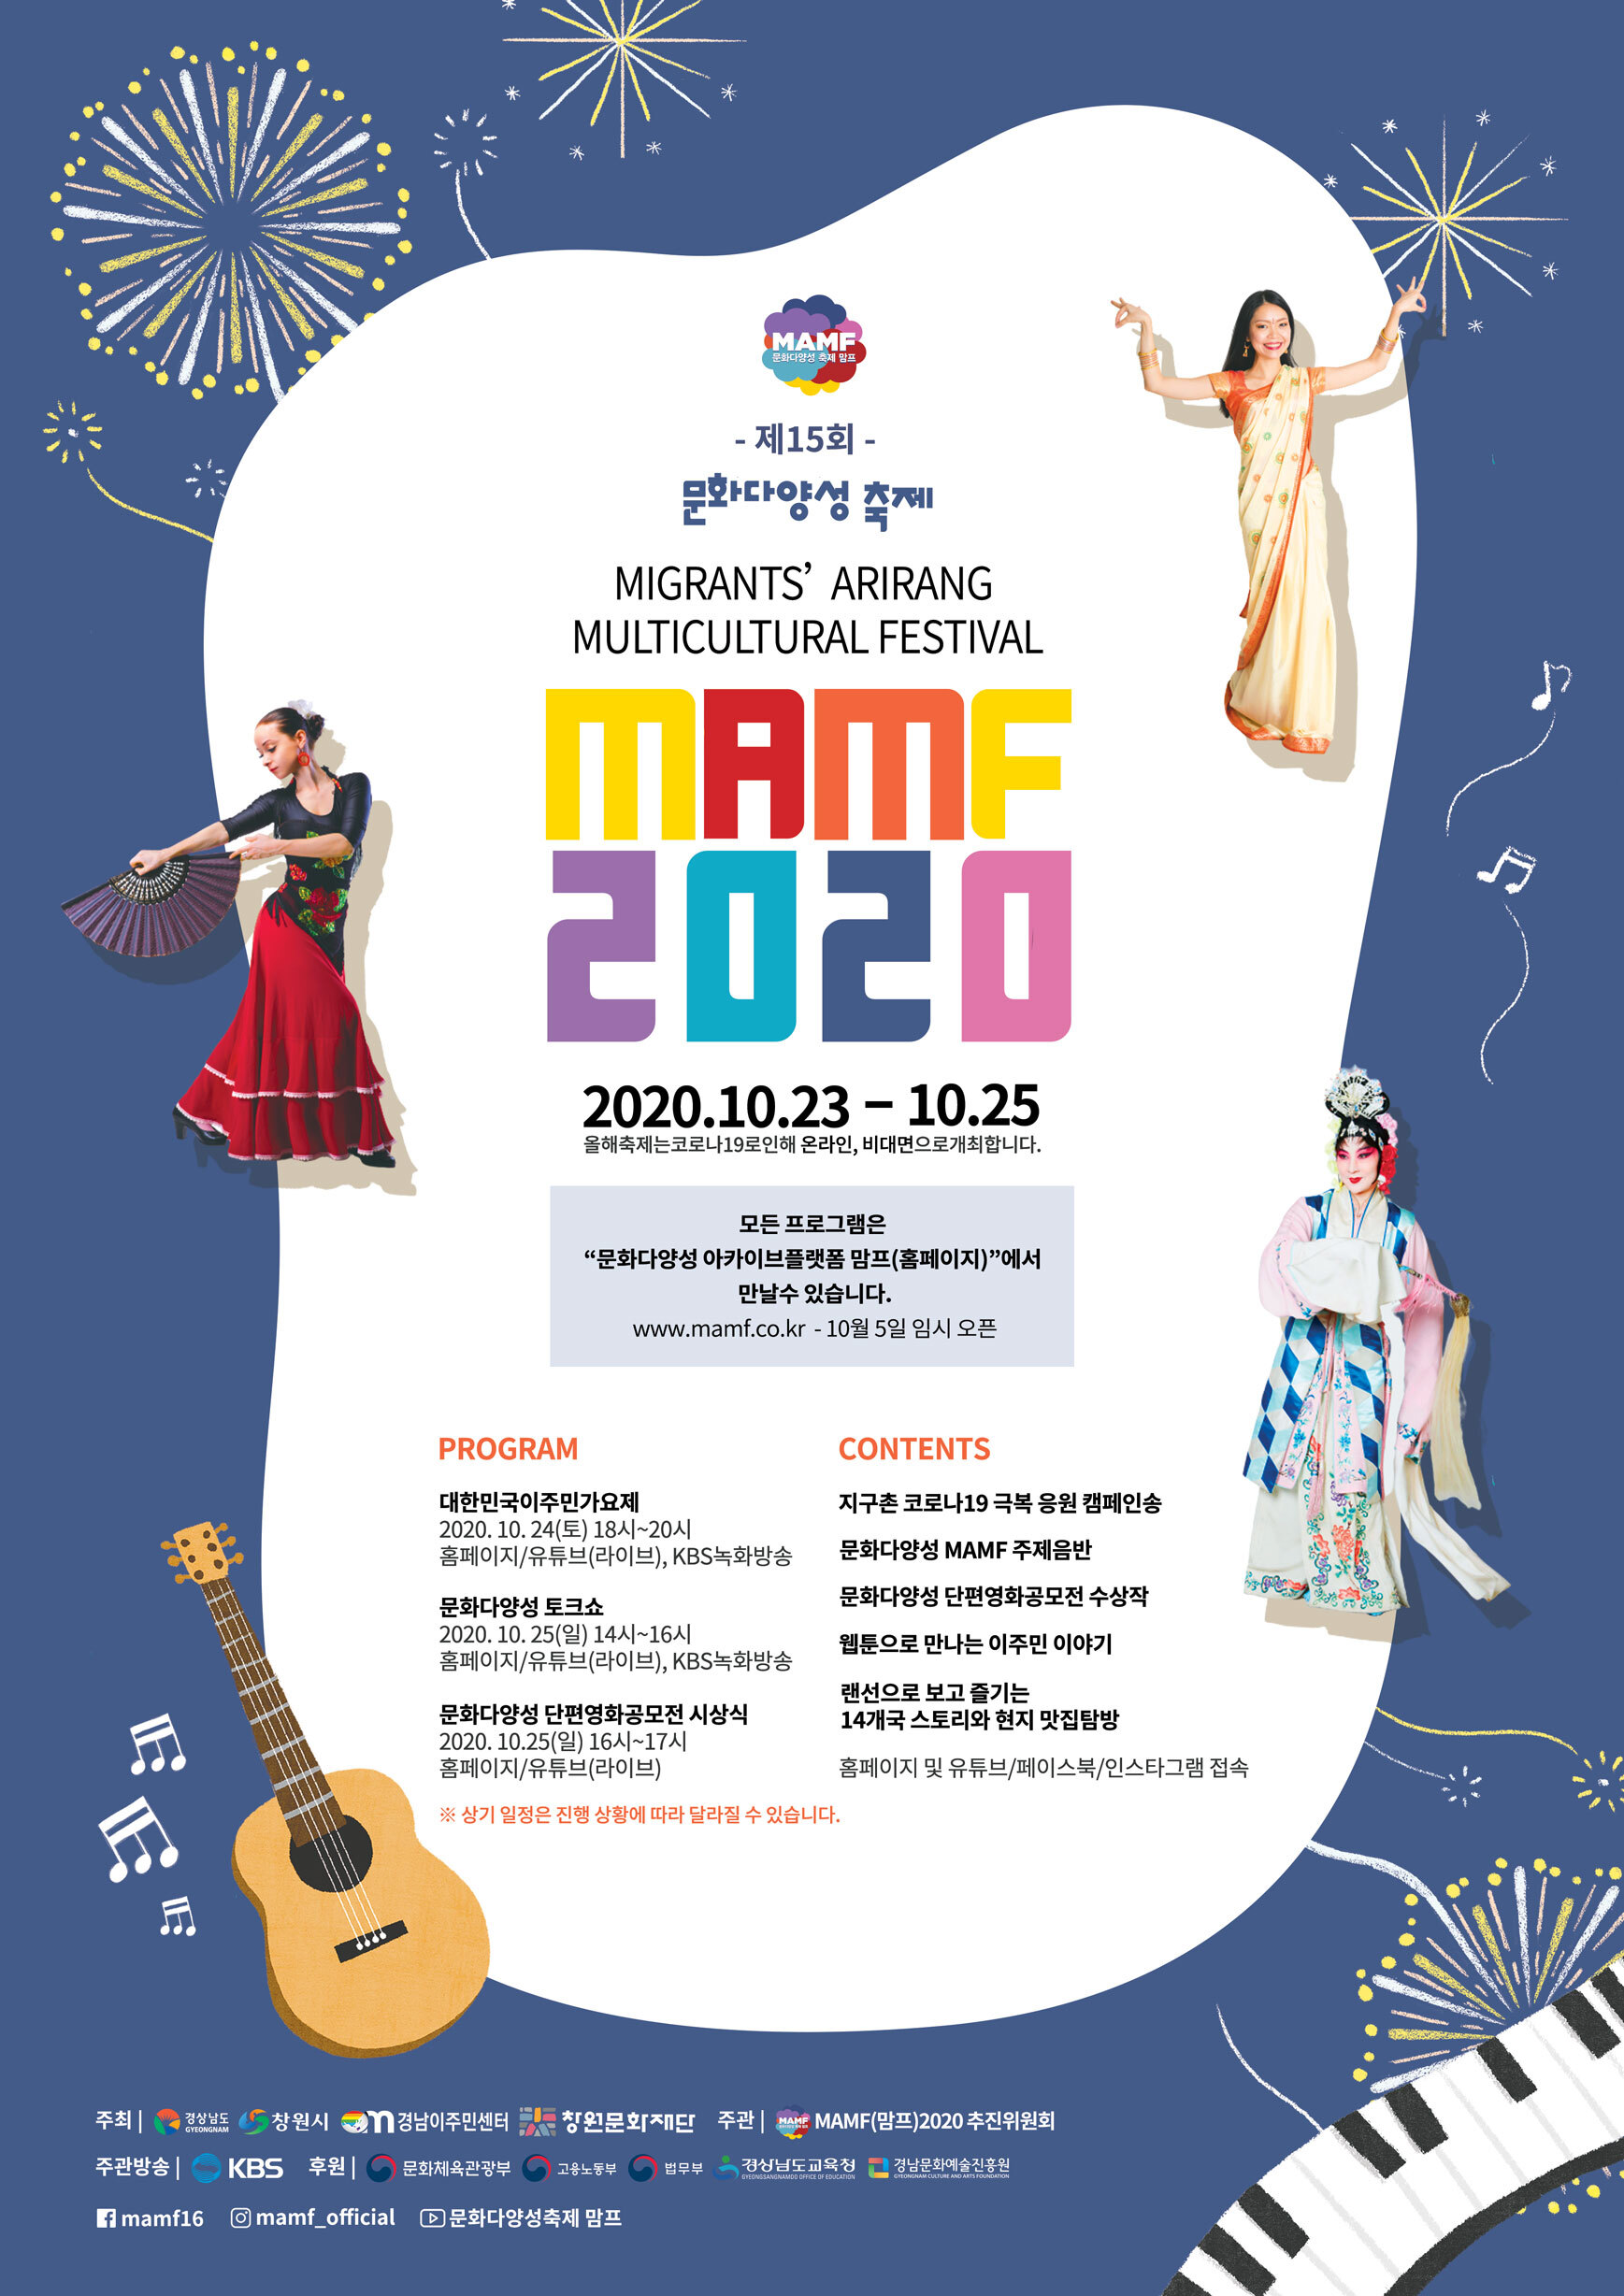 문화다양성 축제 ‘MAMF(맘프) 2020’ 홍보